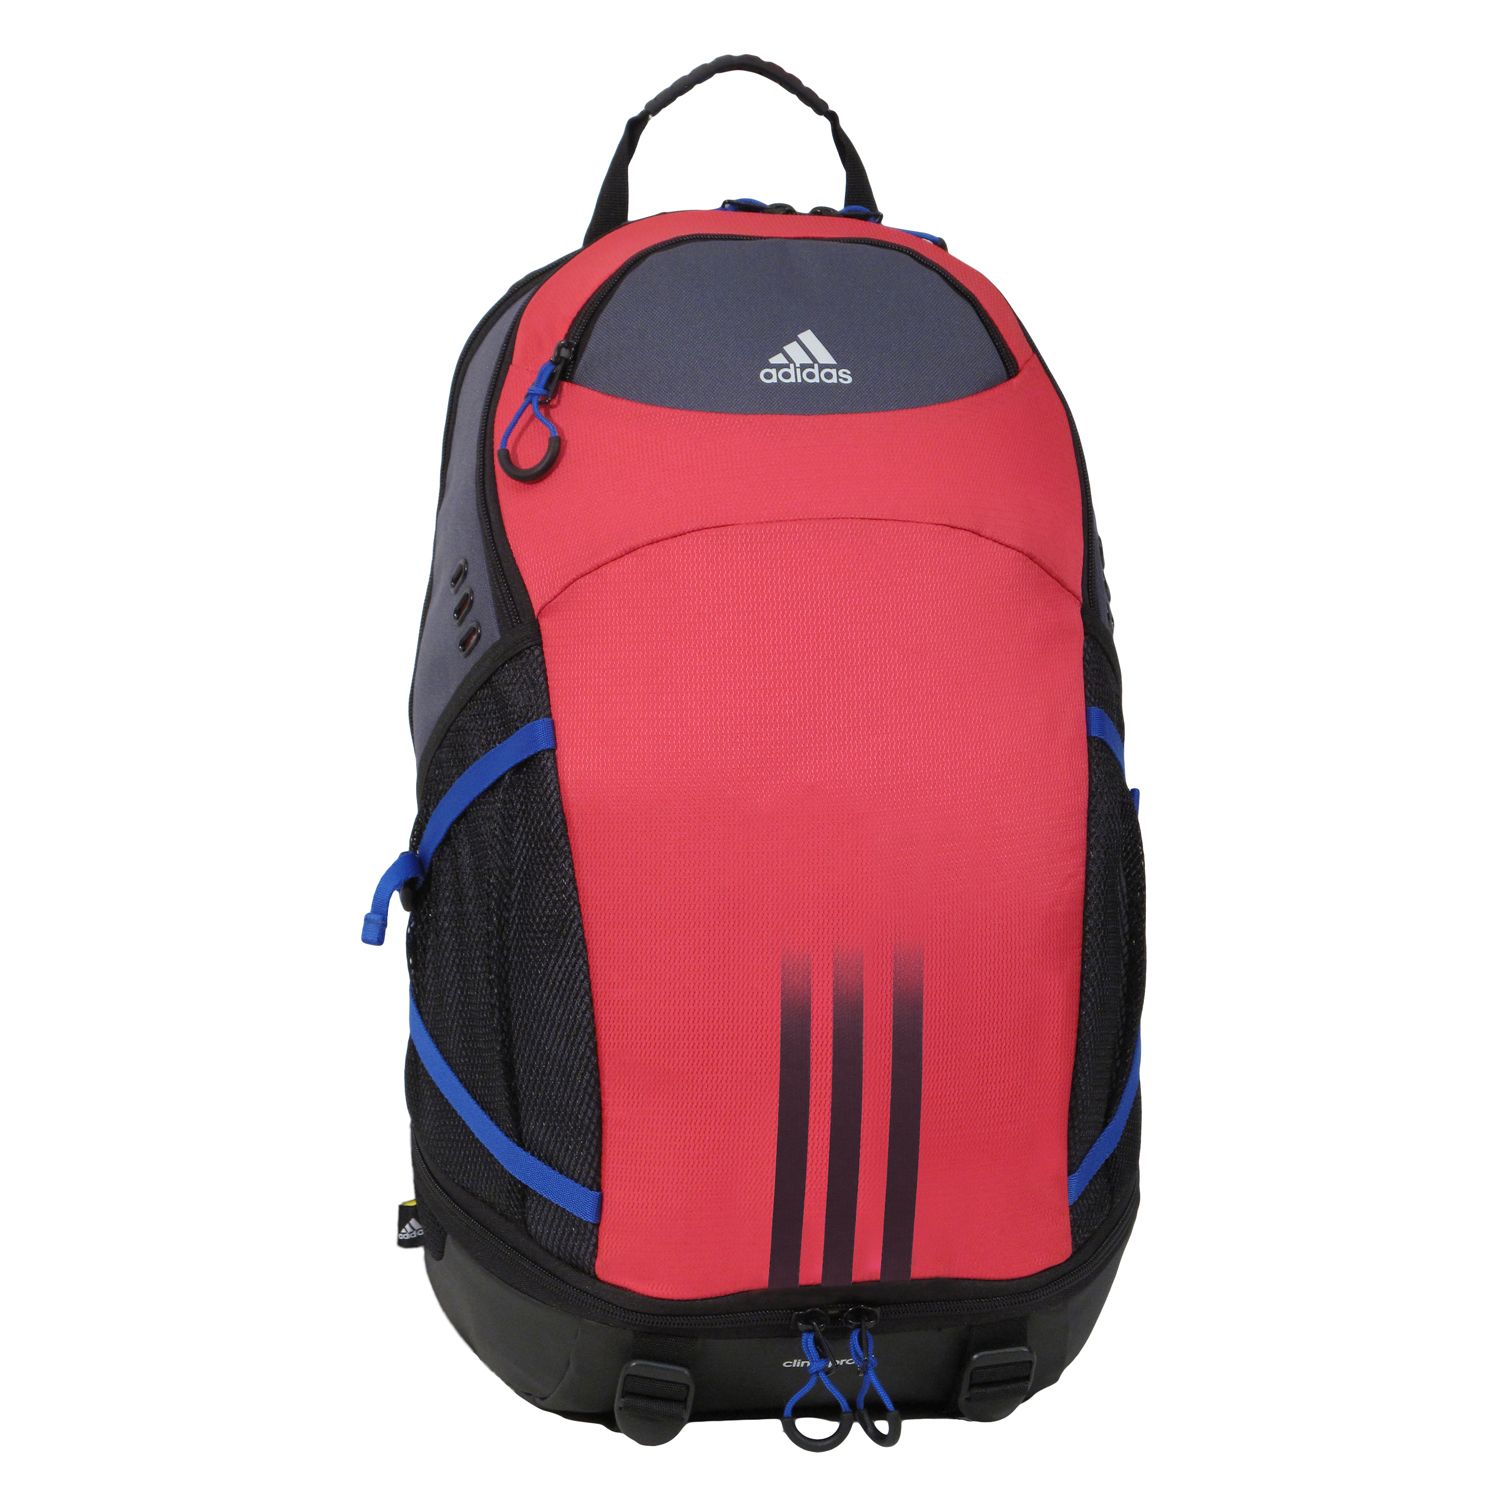 adidas backpacks at kohl's